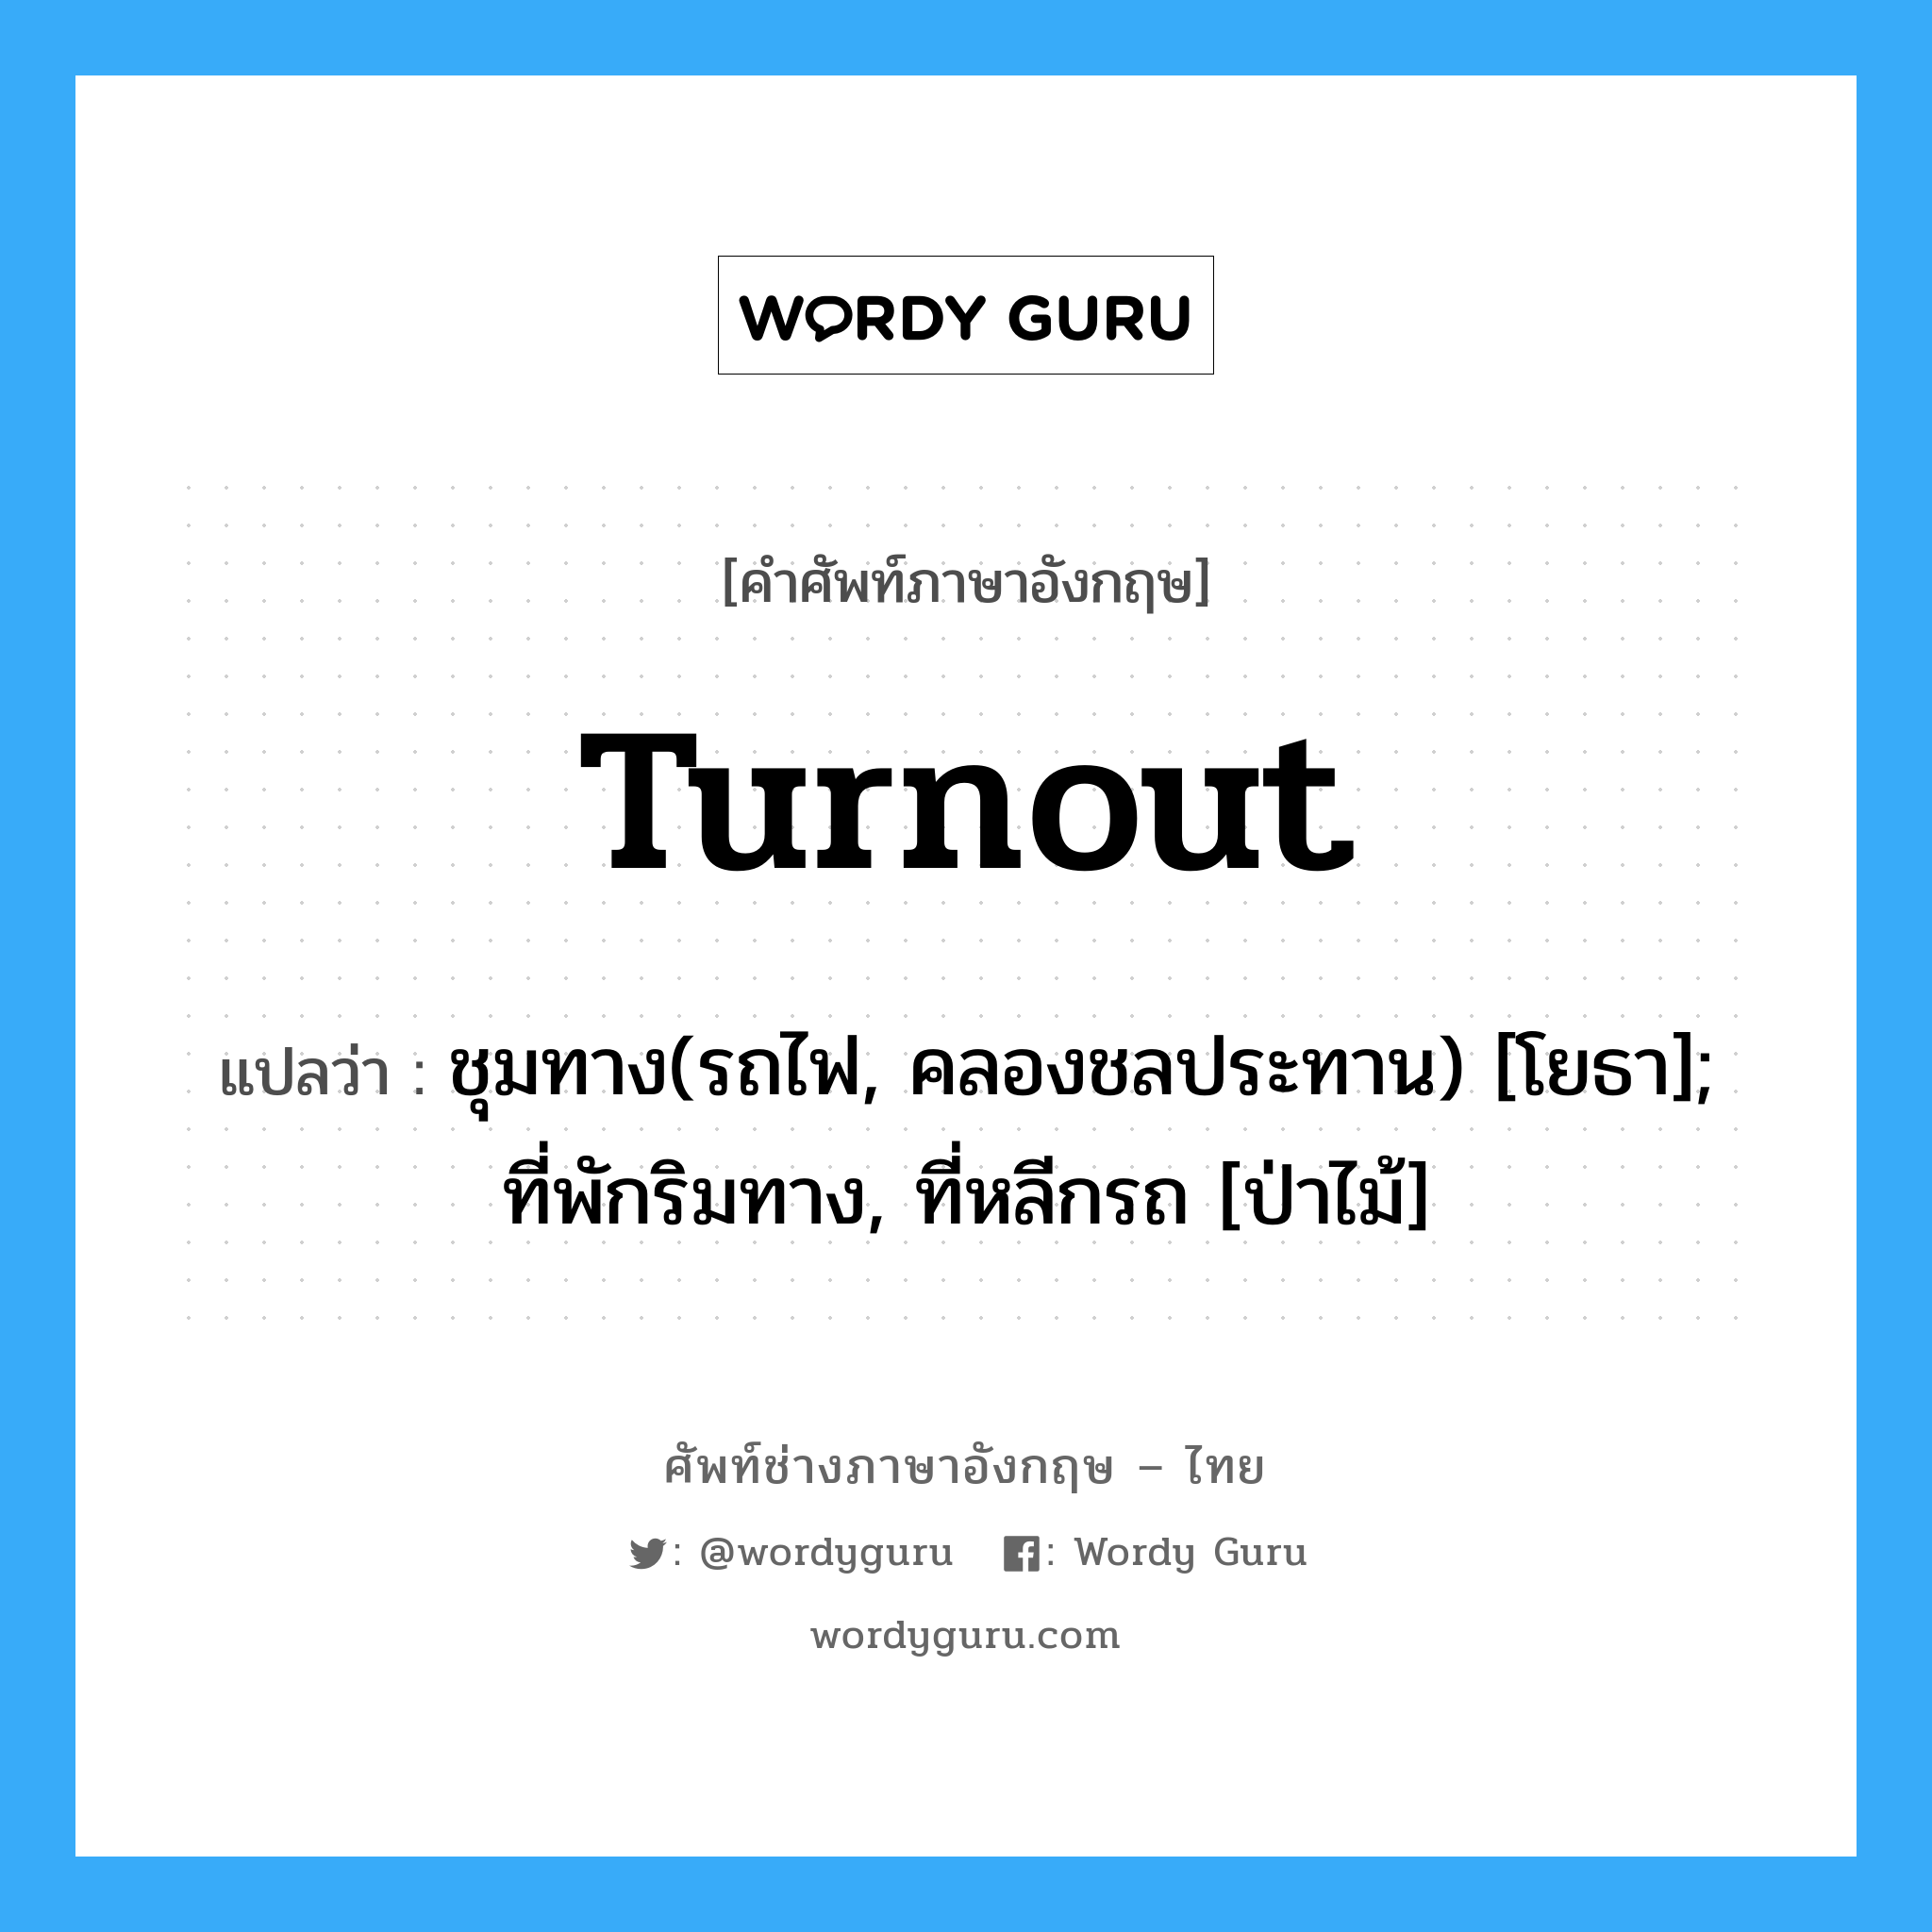 turnout แปลว่า?, คำศัพท์ช่างภาษาอังกฤษ - ไทย turnout คำศัพท์ภาษาอังกฤษ turnout แปลว่า ชุมทาง(รถไฟ, คลองชลประทาน) [โยธา]; ที่พักริมทาง, ที่หลีกรถ [ป่าไม้]